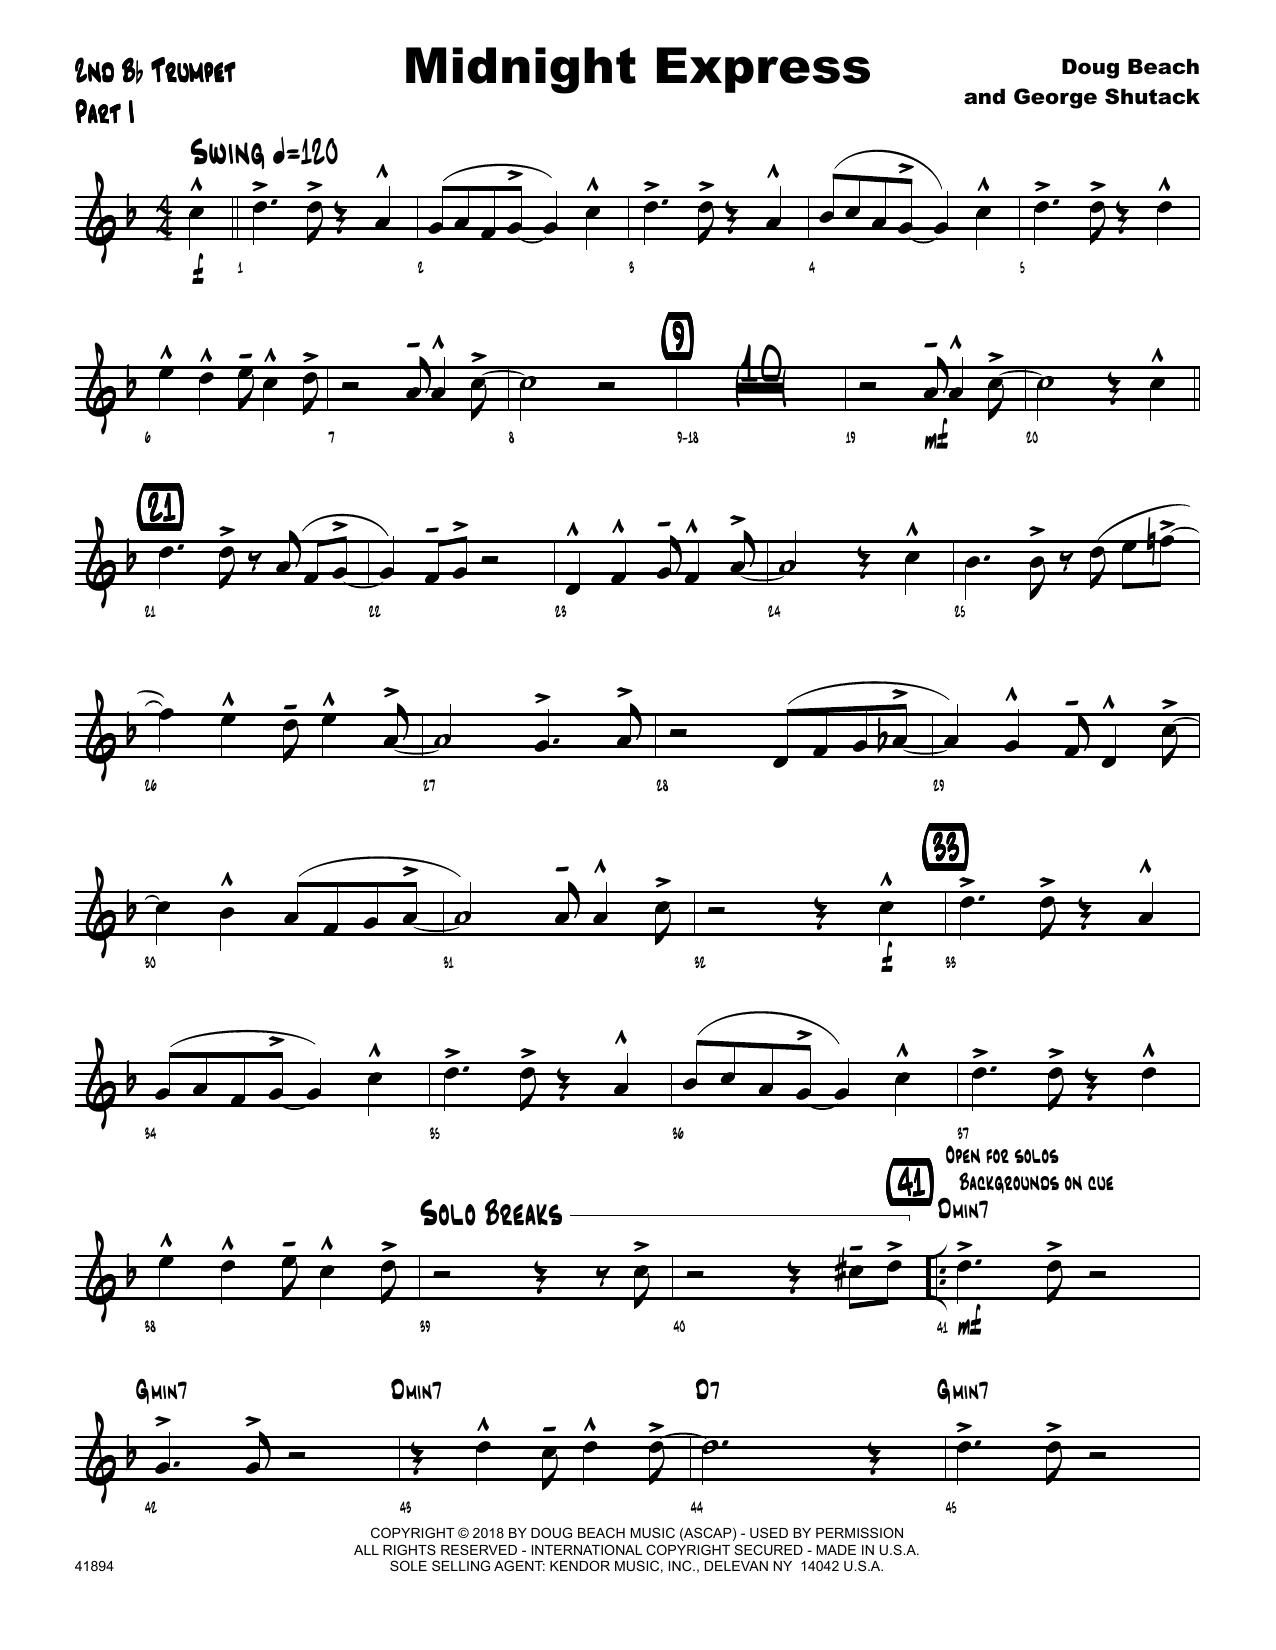 Download Doug Beach & George Shutack Midnight Express - 2nd Bb Trumpet Sheet Music